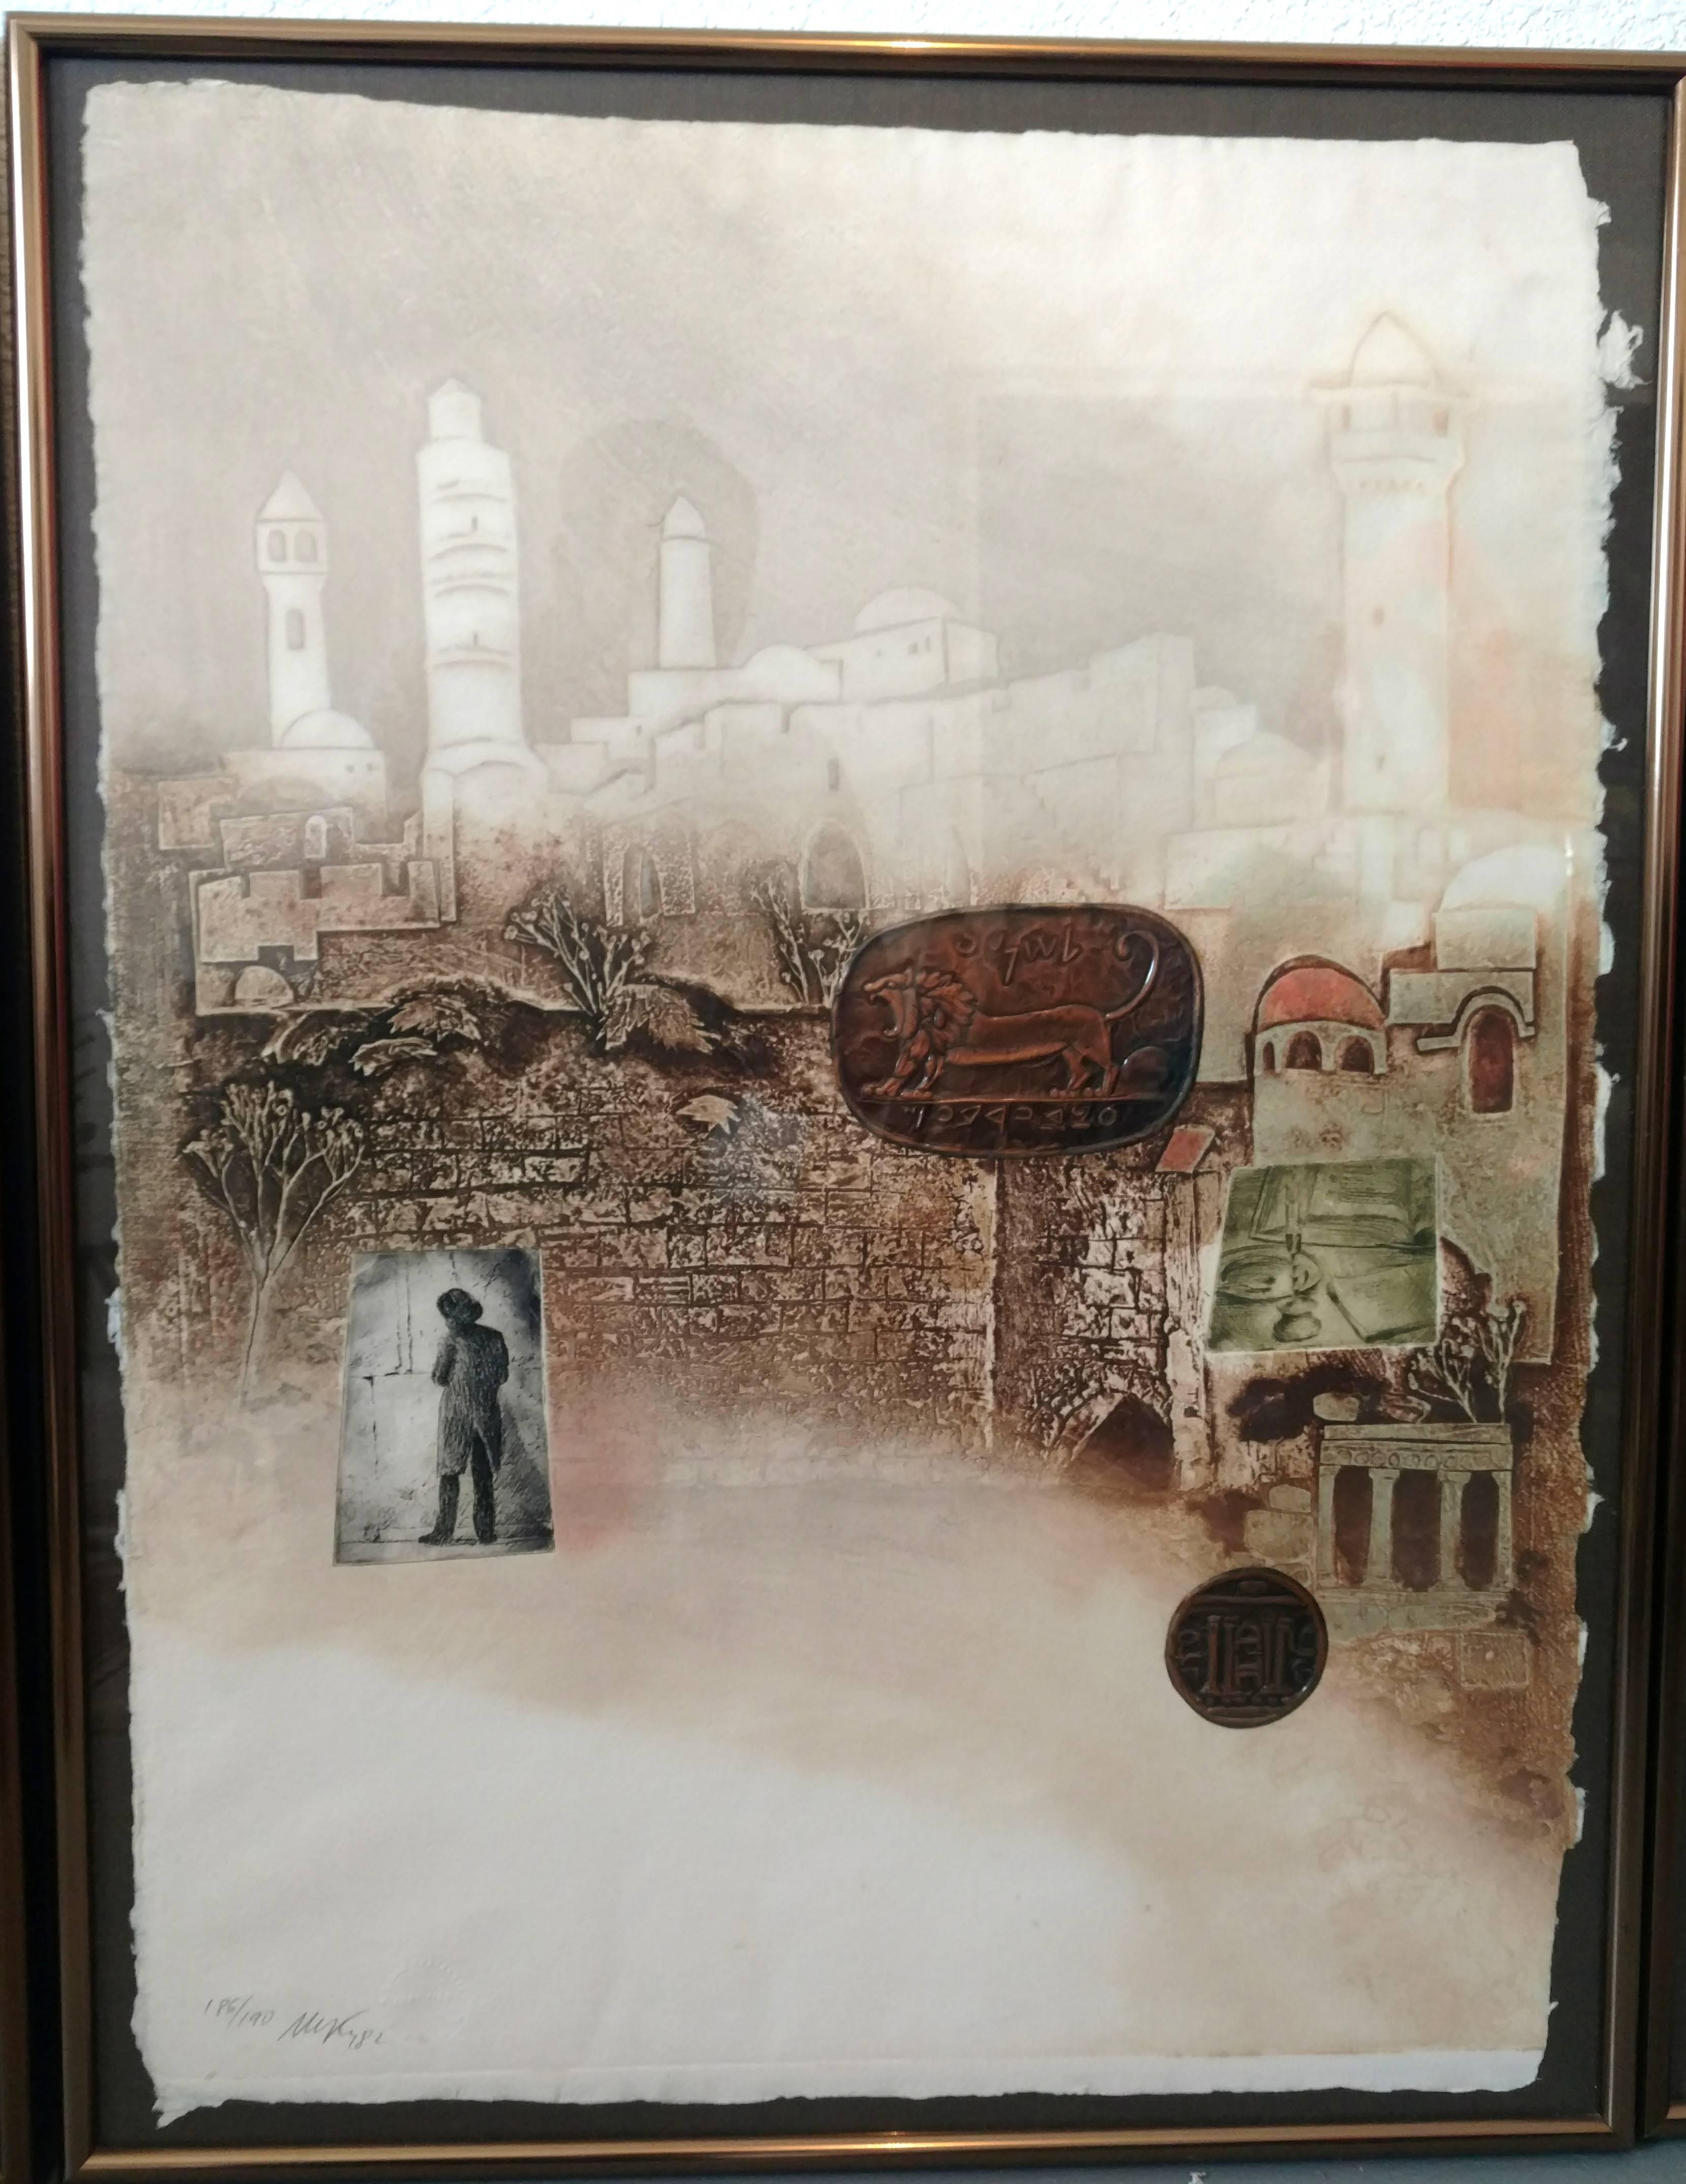 Jerusalem City of Gold, dreiteiliges Triptychon, mit Bleistift signiert 186/190, Rahmen aus gebürsteter Bronze. Die Stadt der Religion Wunderschön eingefangen in diesem herrlichen Triptychon.

Dieses Stichtiefdruck-Mischmedium ist auf schwerem